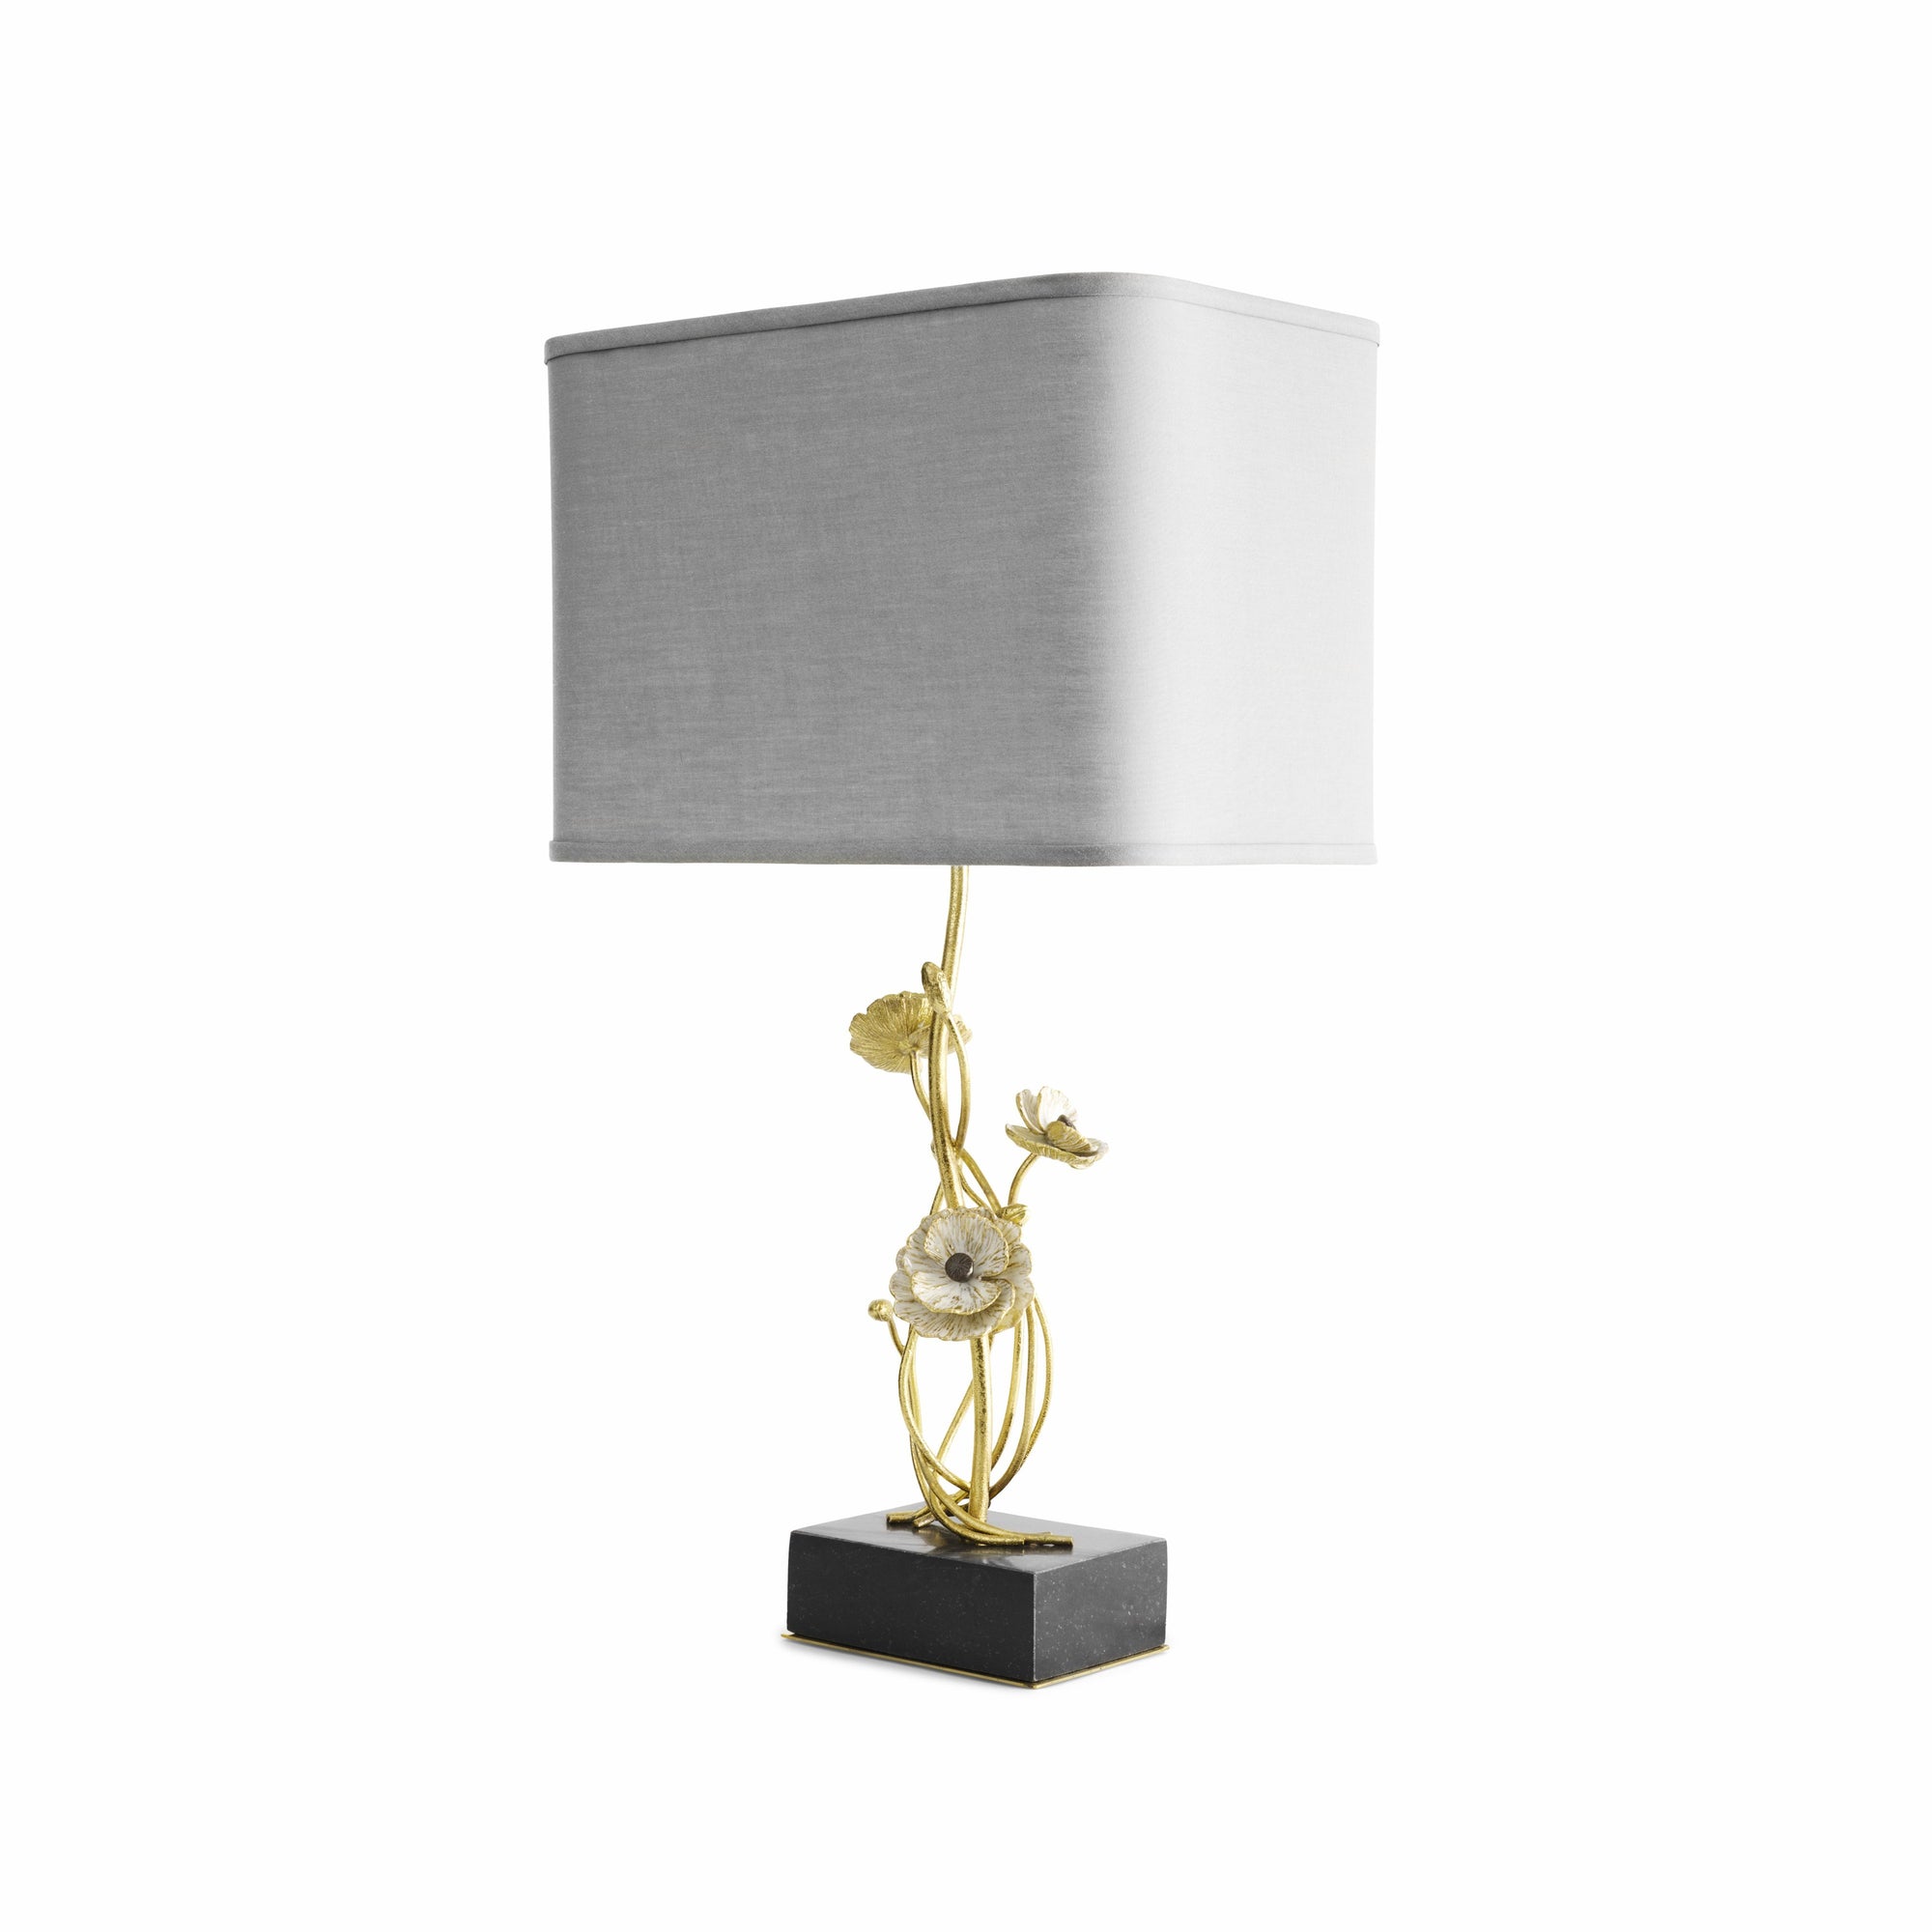 Michael Aram Anemone Table Lamp